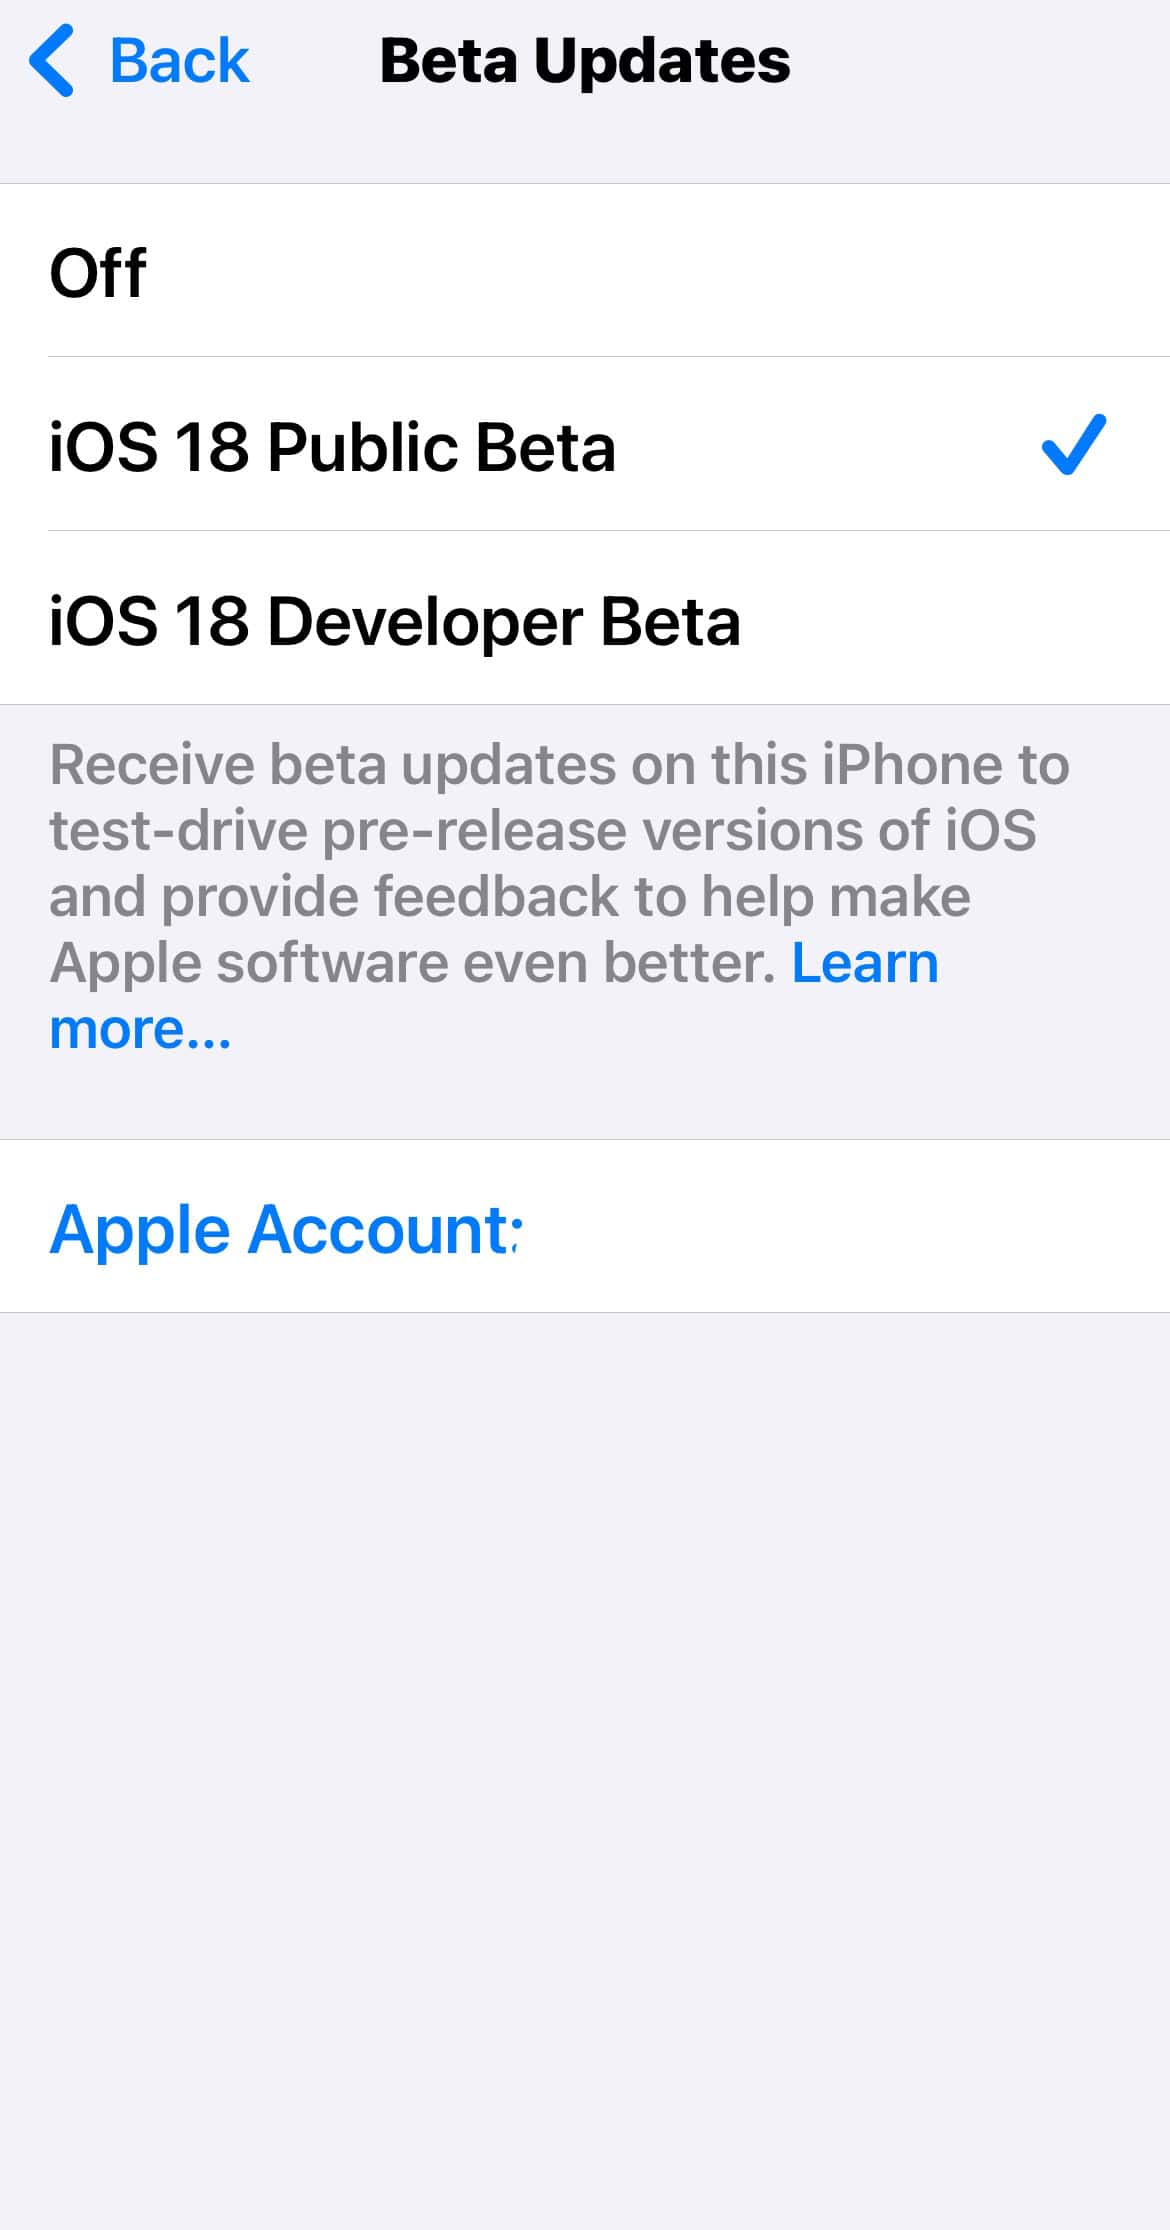 iOS 18 Dev and Public Beta Updates